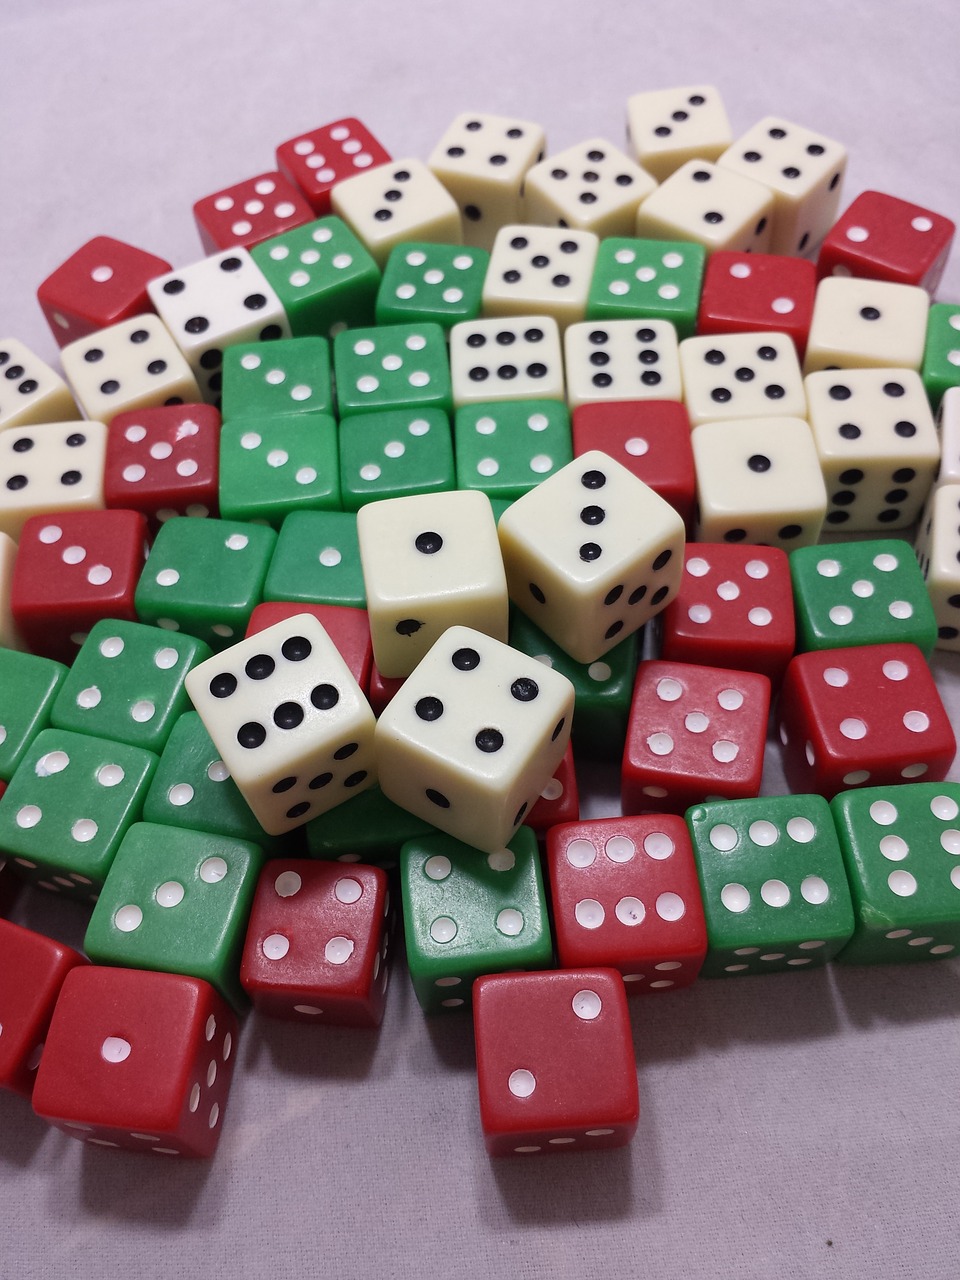 die dice gambling free photo